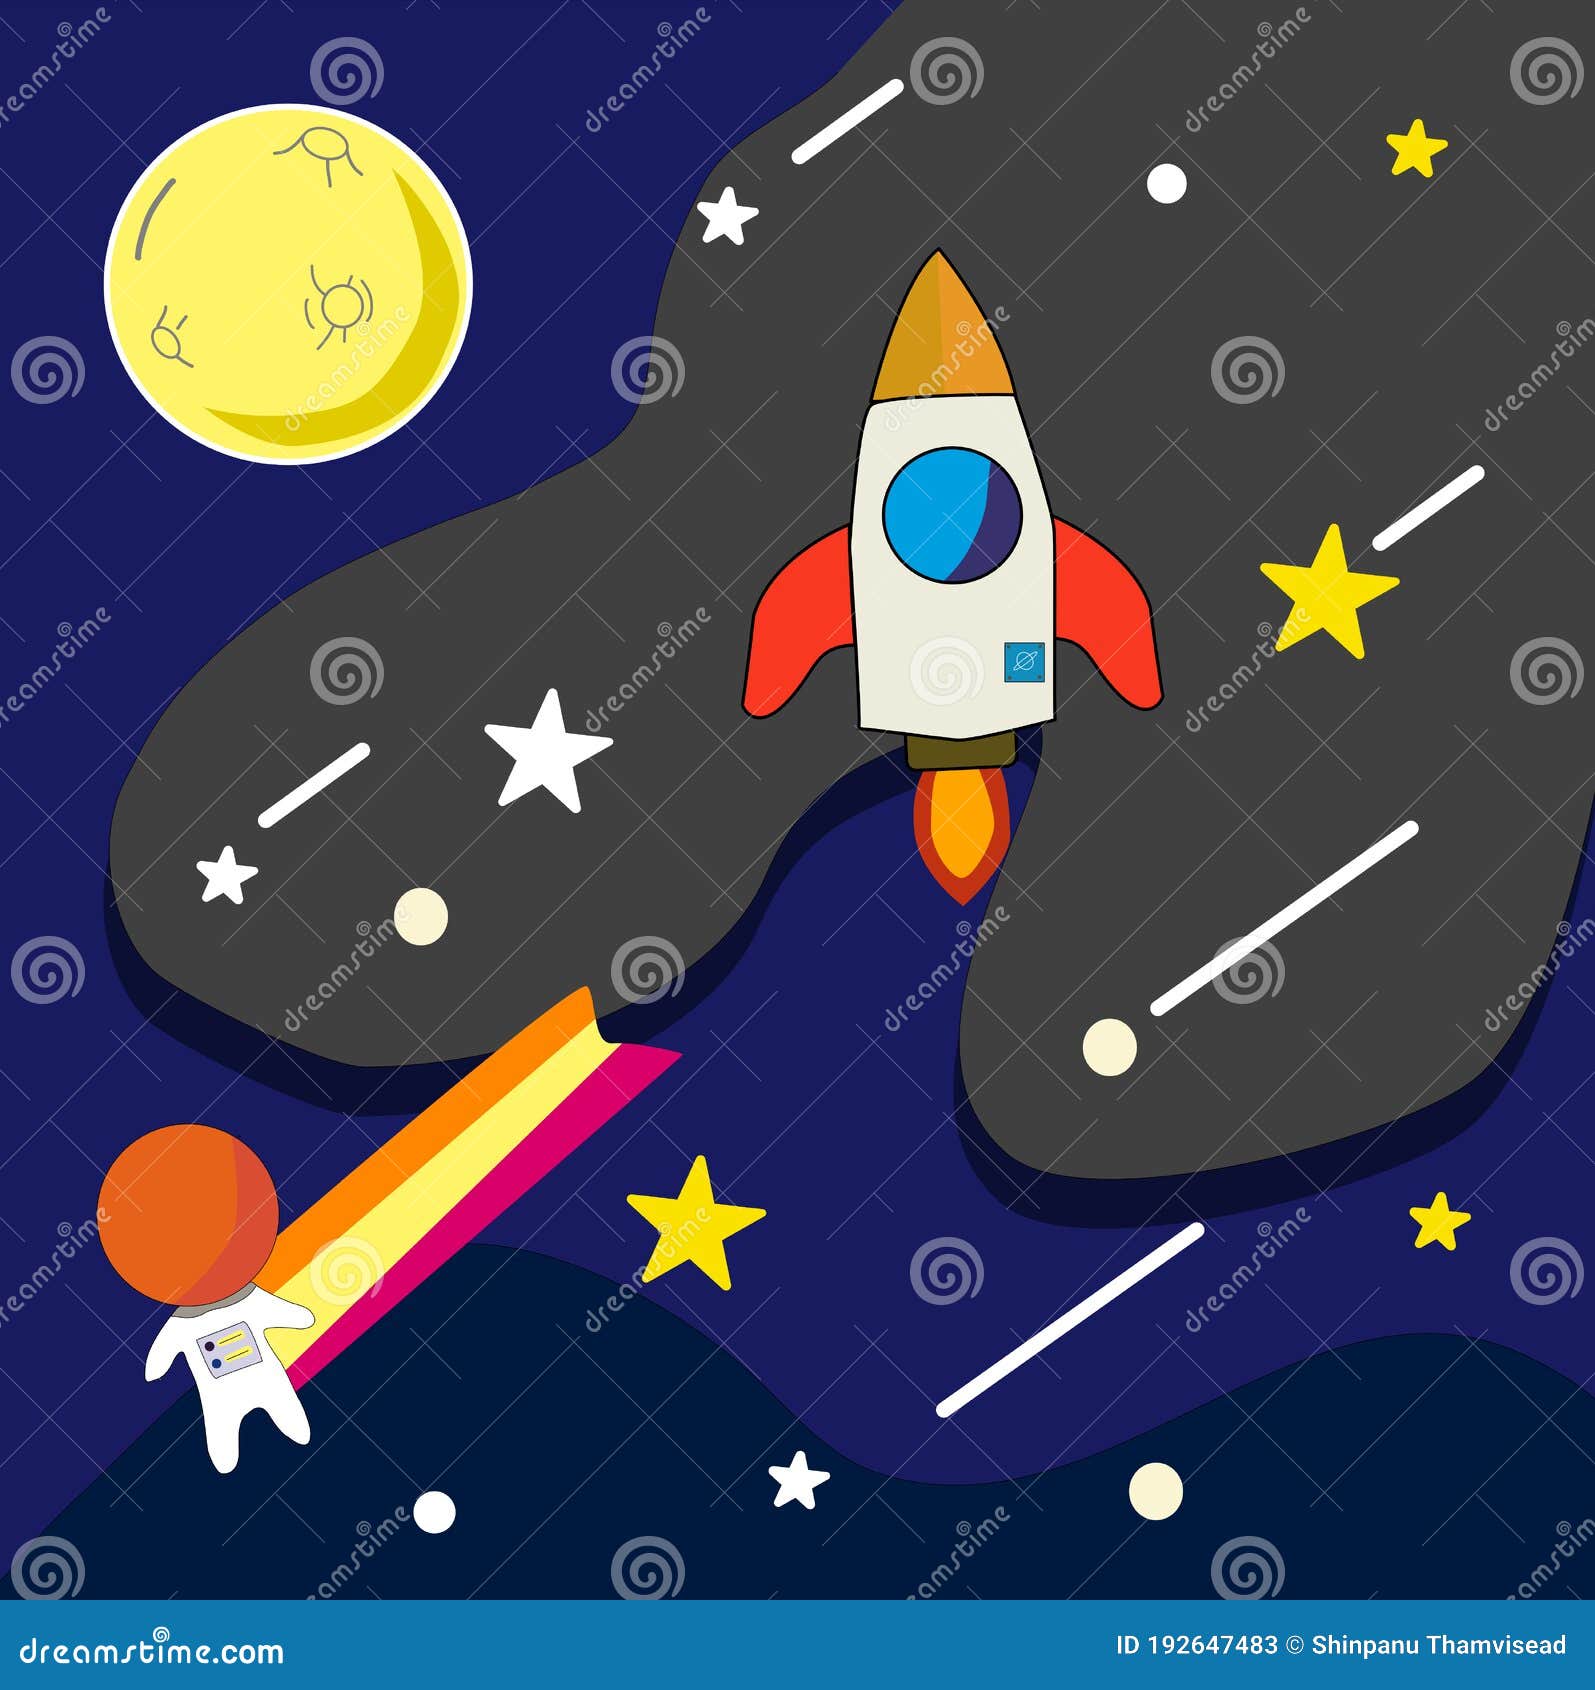 conjunto de espacio para niños. colección de elementos espaciales, luna,  astronauta, estrellas, ilustración de cohete.vector en estilo de dibujos  animados. estilo plano 15645768 Vector en Vecteezy